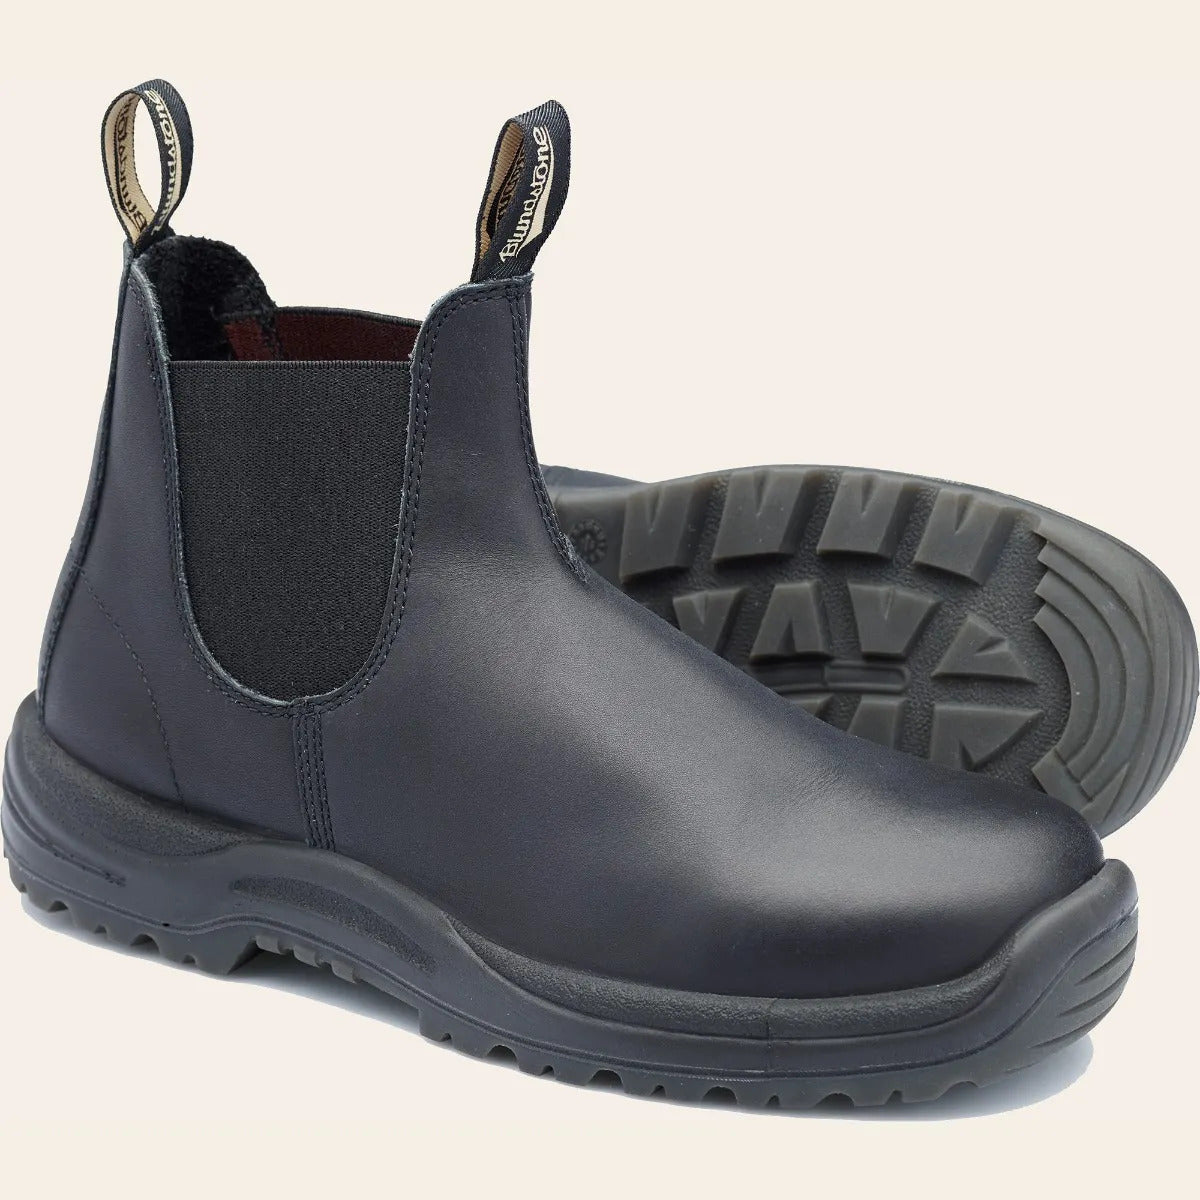 179 Blundstone 6 Inch Slip On Steel Toe Boot (Black)